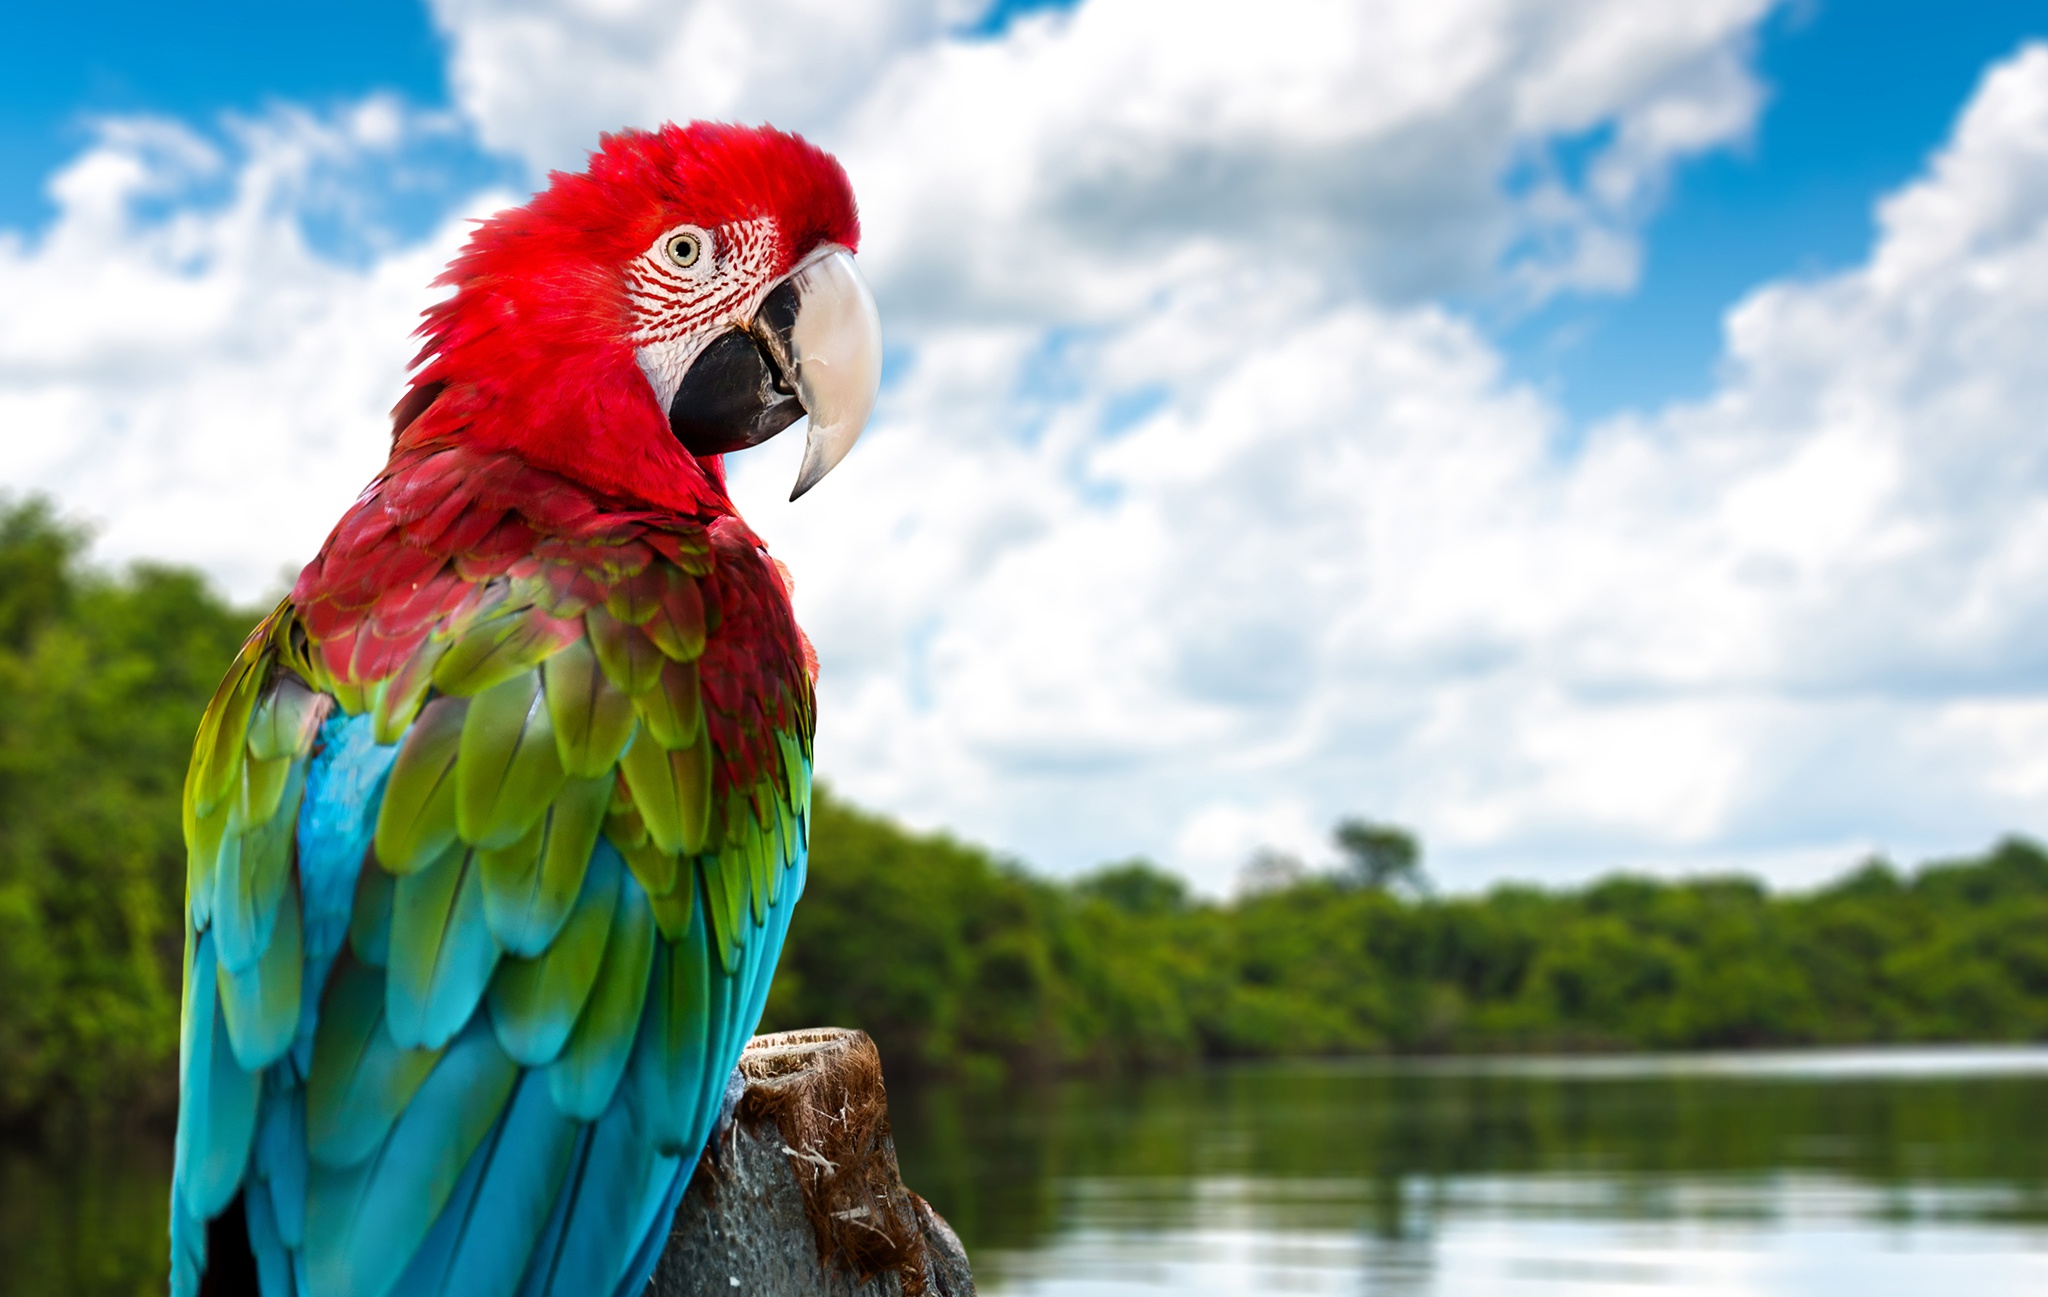 Descarga gratuita de fondo de pantalla para móvil de Animales, Pájaro, Guacamayo, Ara Chloropterus.